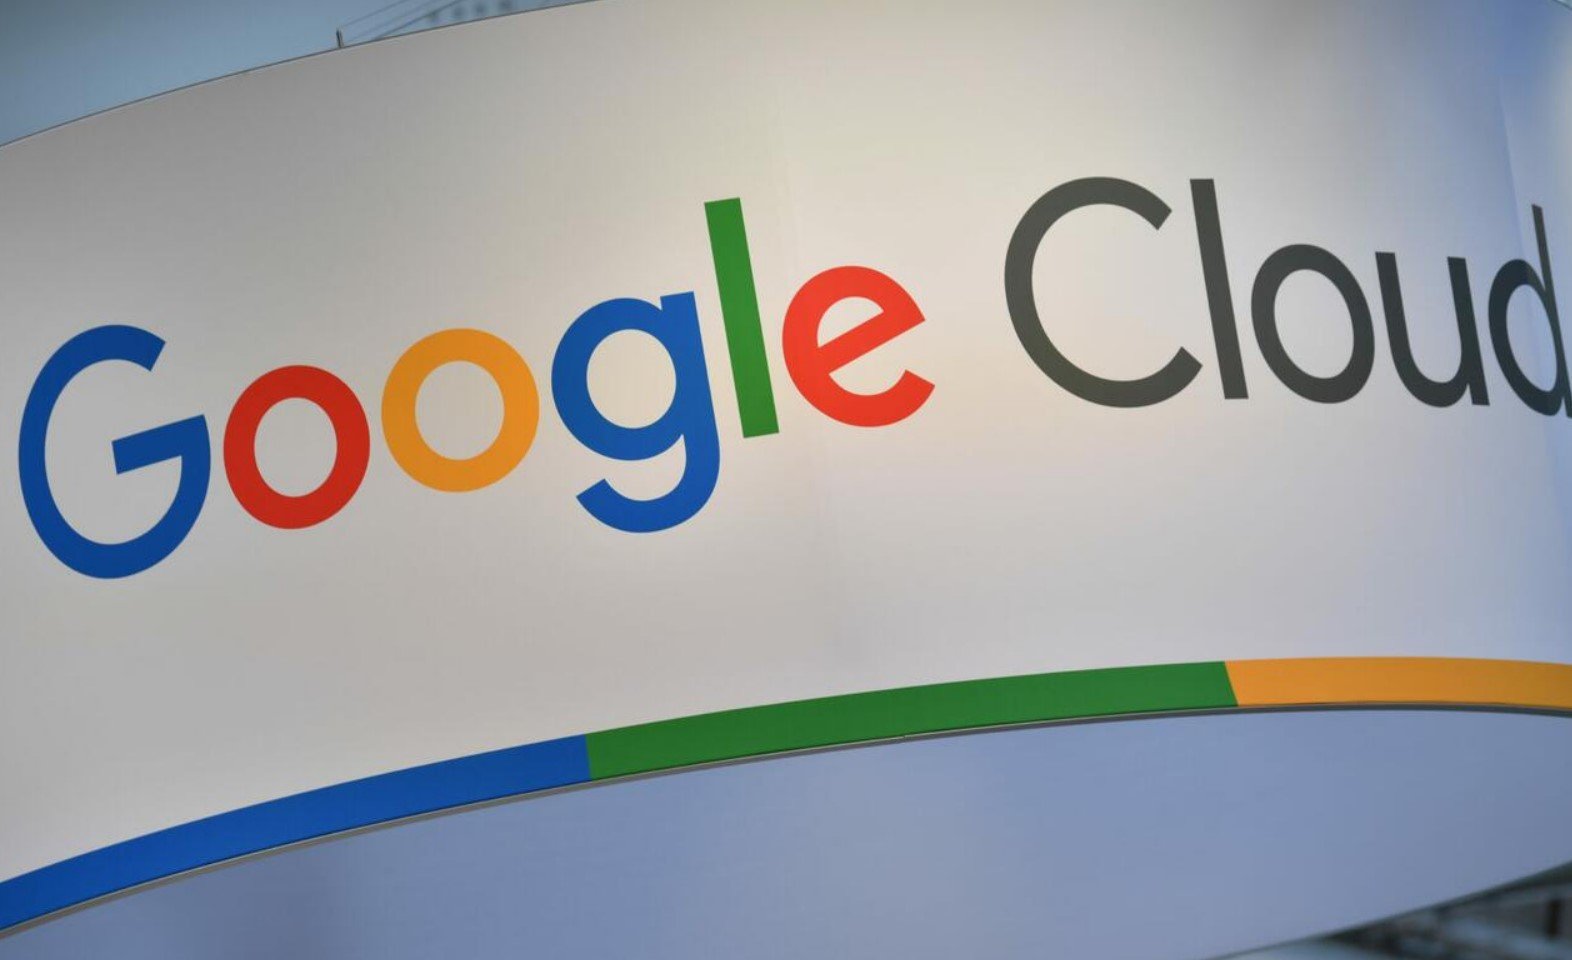 Google Cloud lanseeraa uuden tekoälyllä toimivan rahanpesua estävän tuotteen suurille pankeille